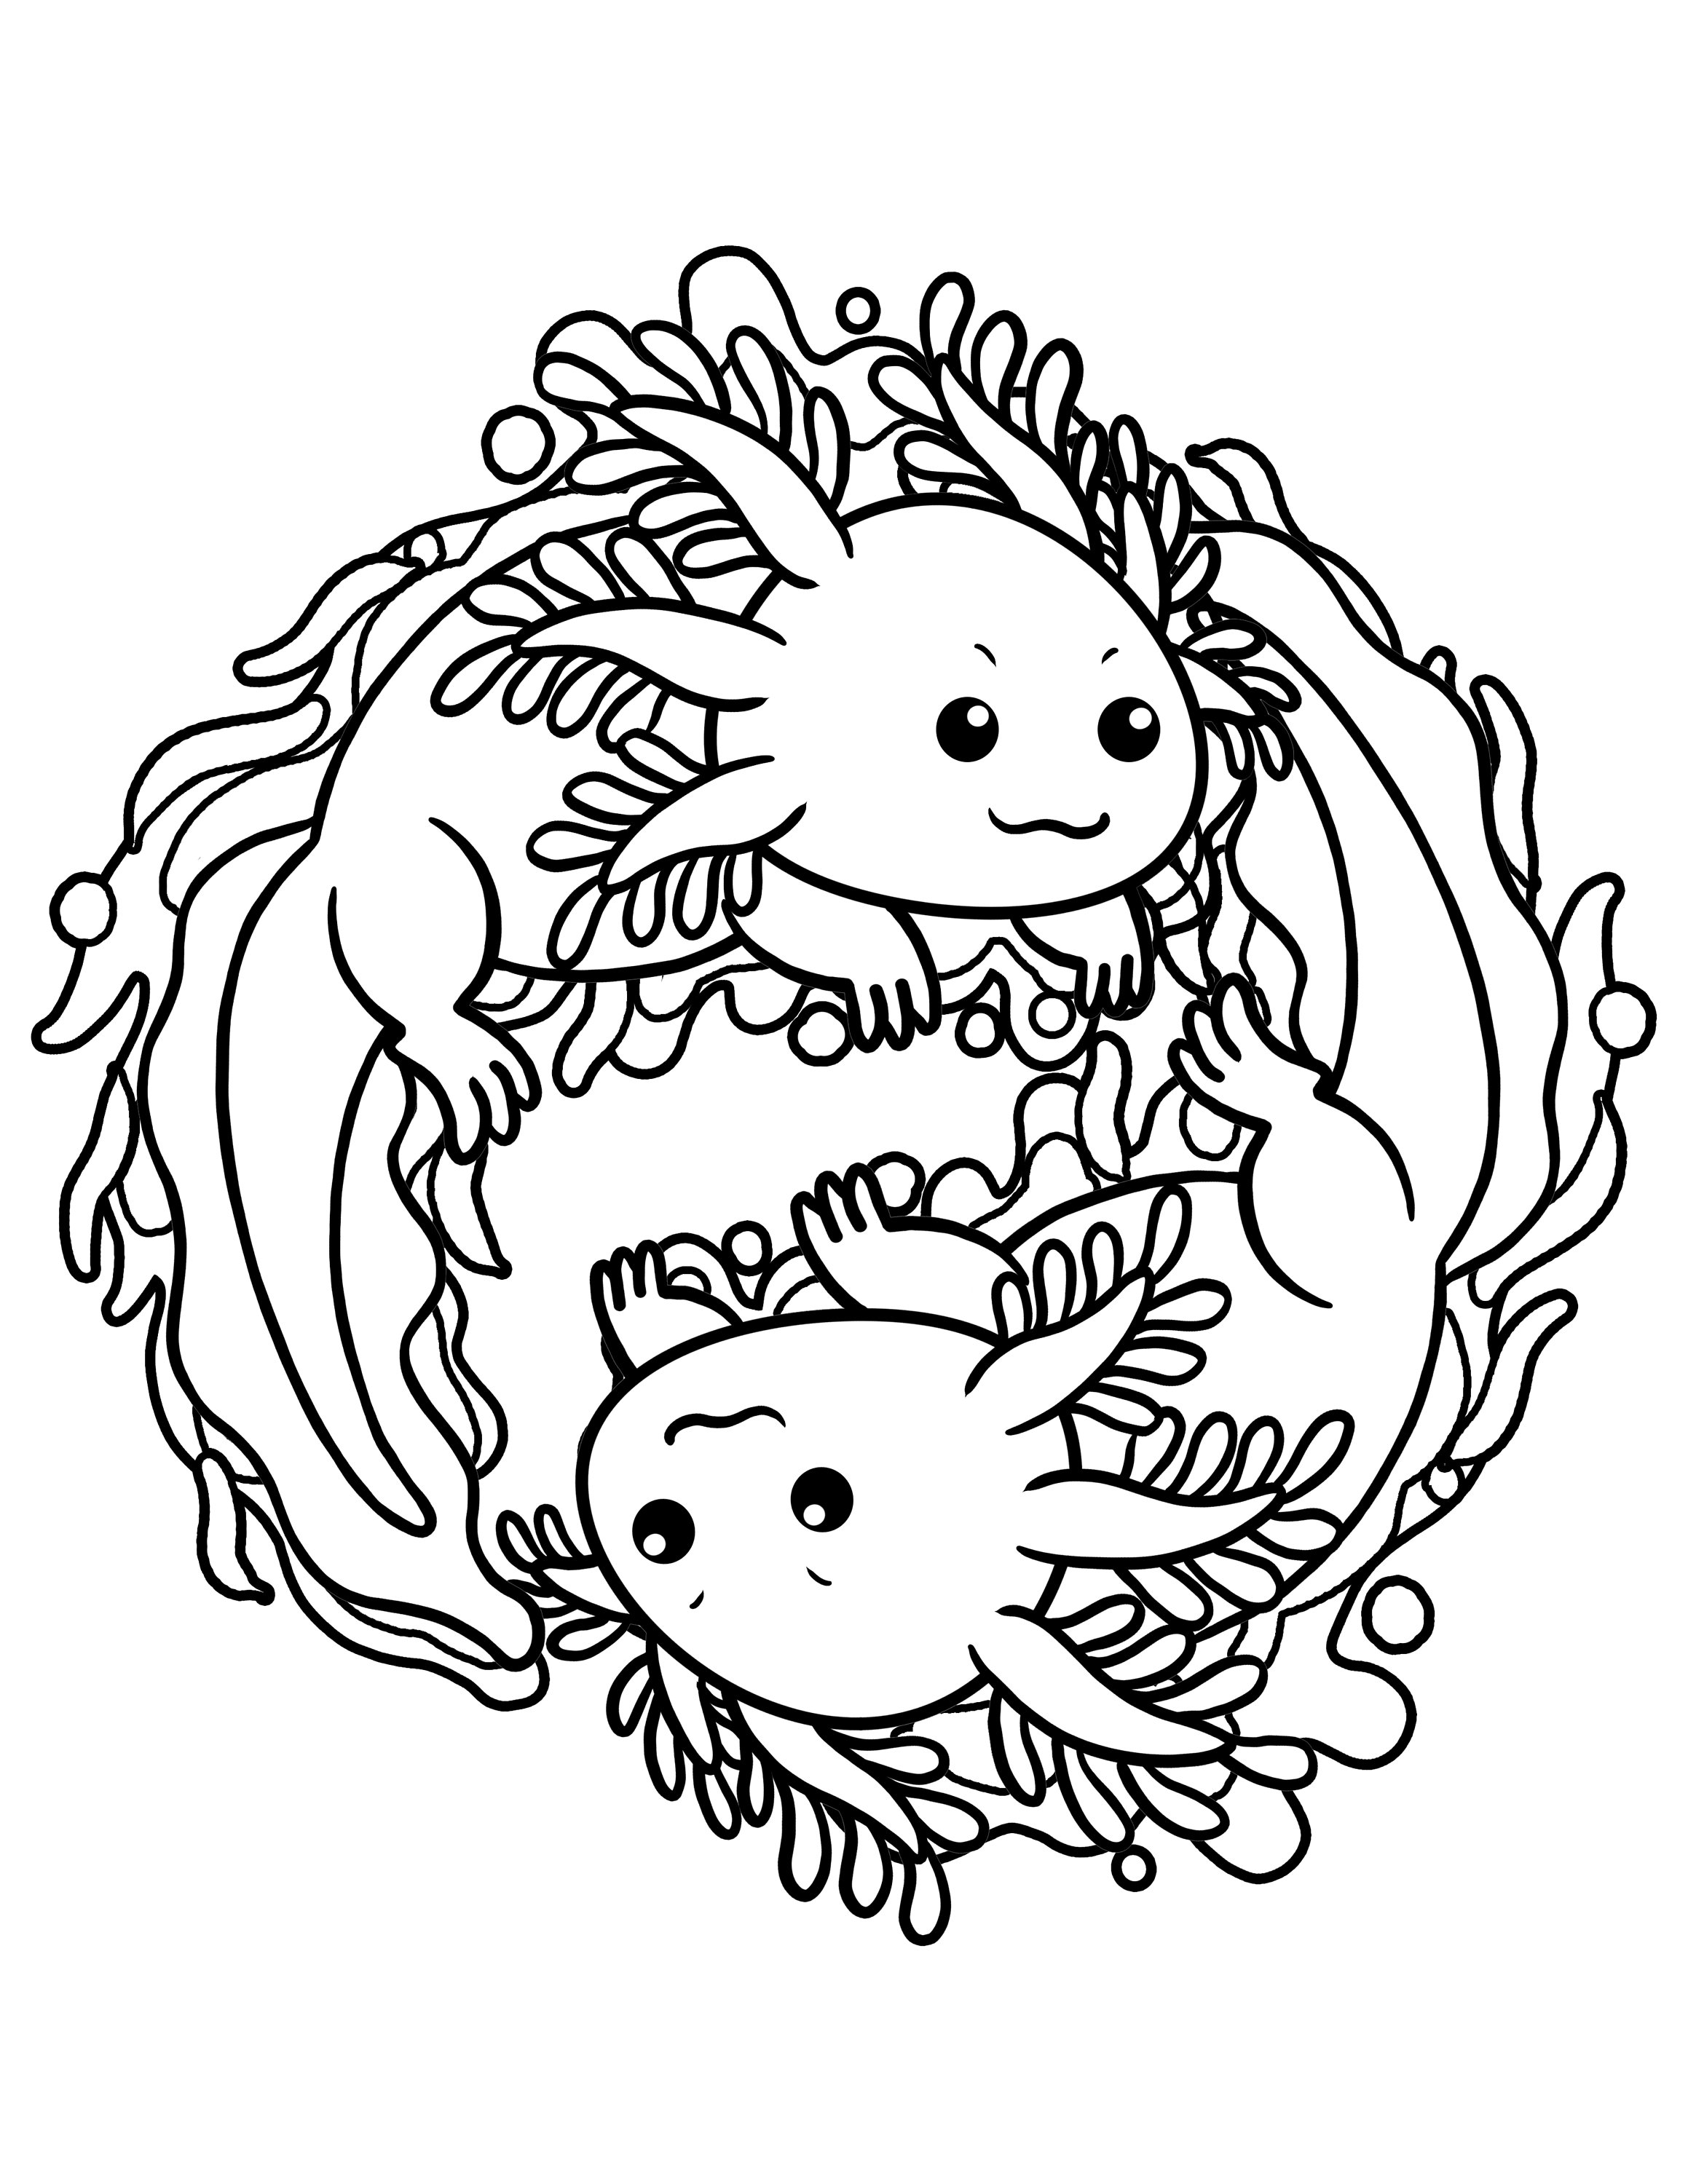 Axolotl Yinyang / Cute Axolotl Coloring Page / Digital - Etsy